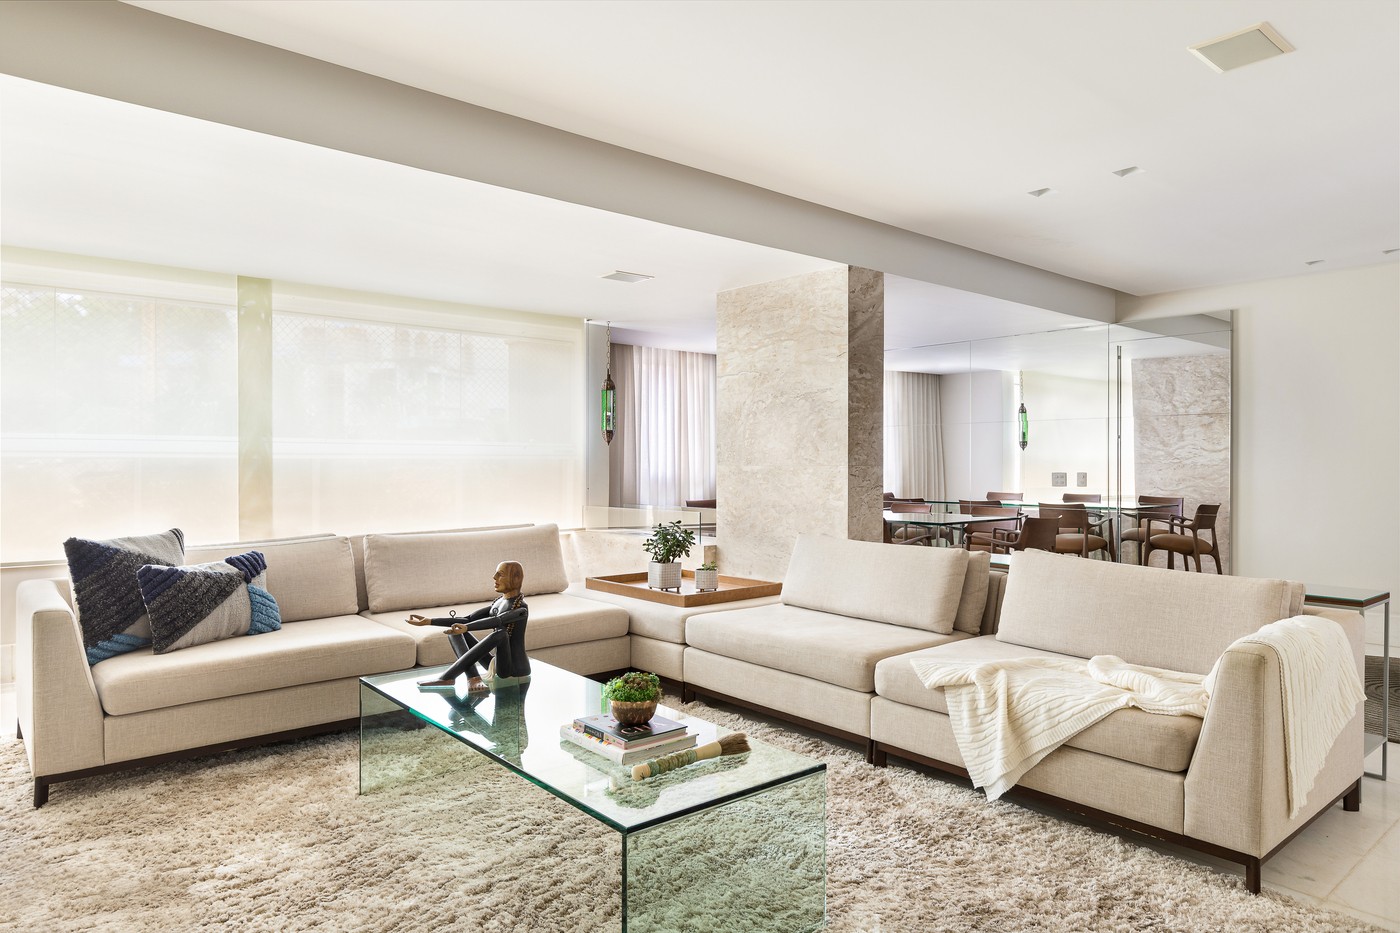 Décor do dia: estilo minimalista e mármore branco na sala de estar (Foto: Ivan Araújo)